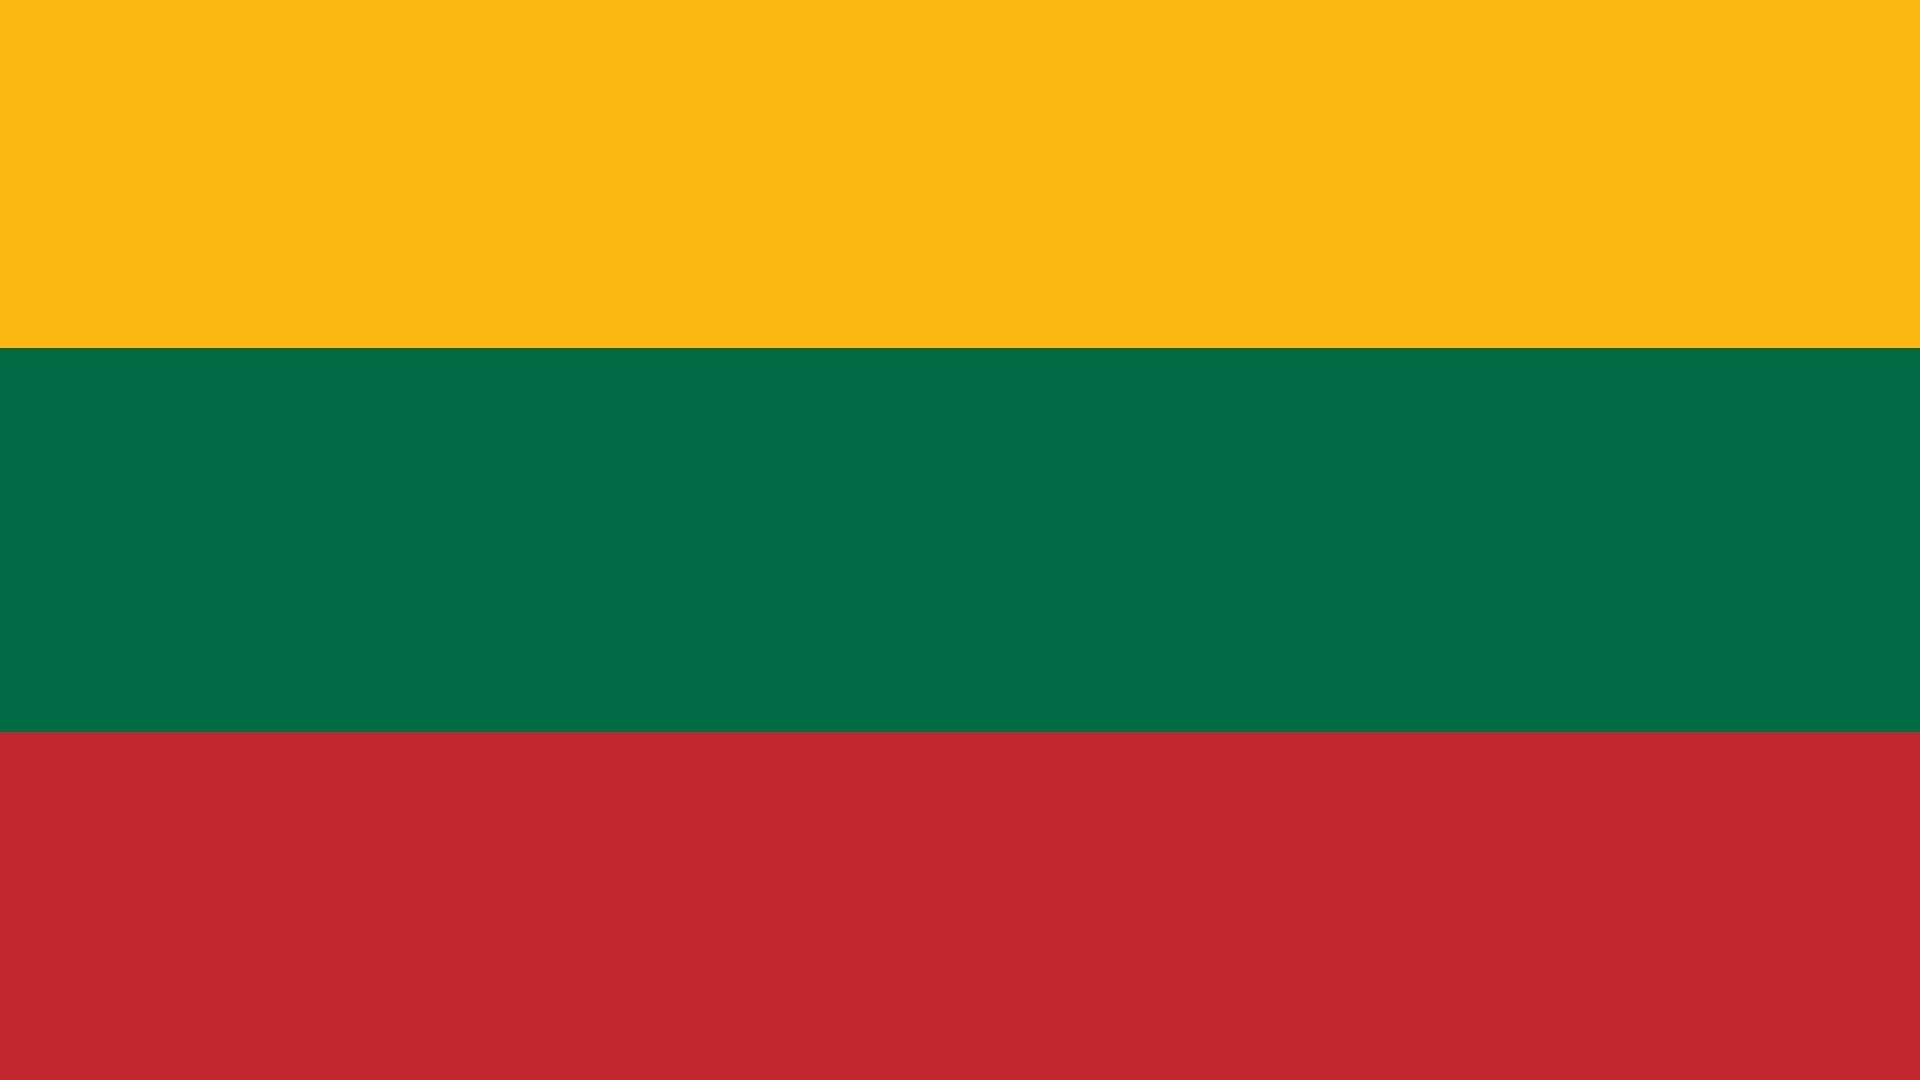 A bandeira da Lituânia consiste em uma tricolor horizontal com as cores amarelo, verde e vermelho.